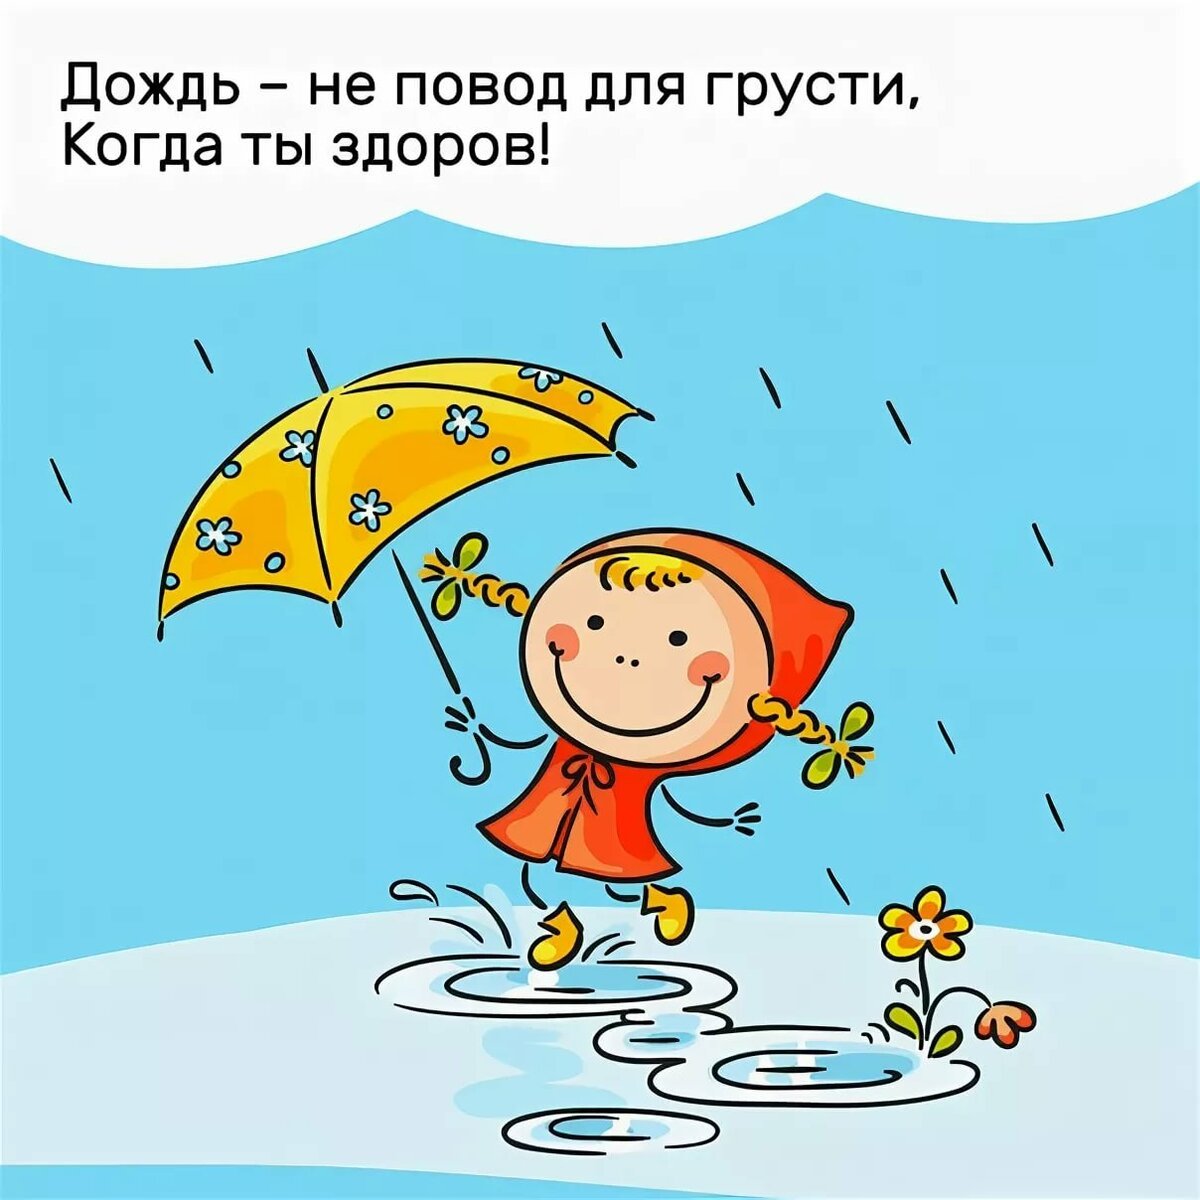 Дождь не повод грустить